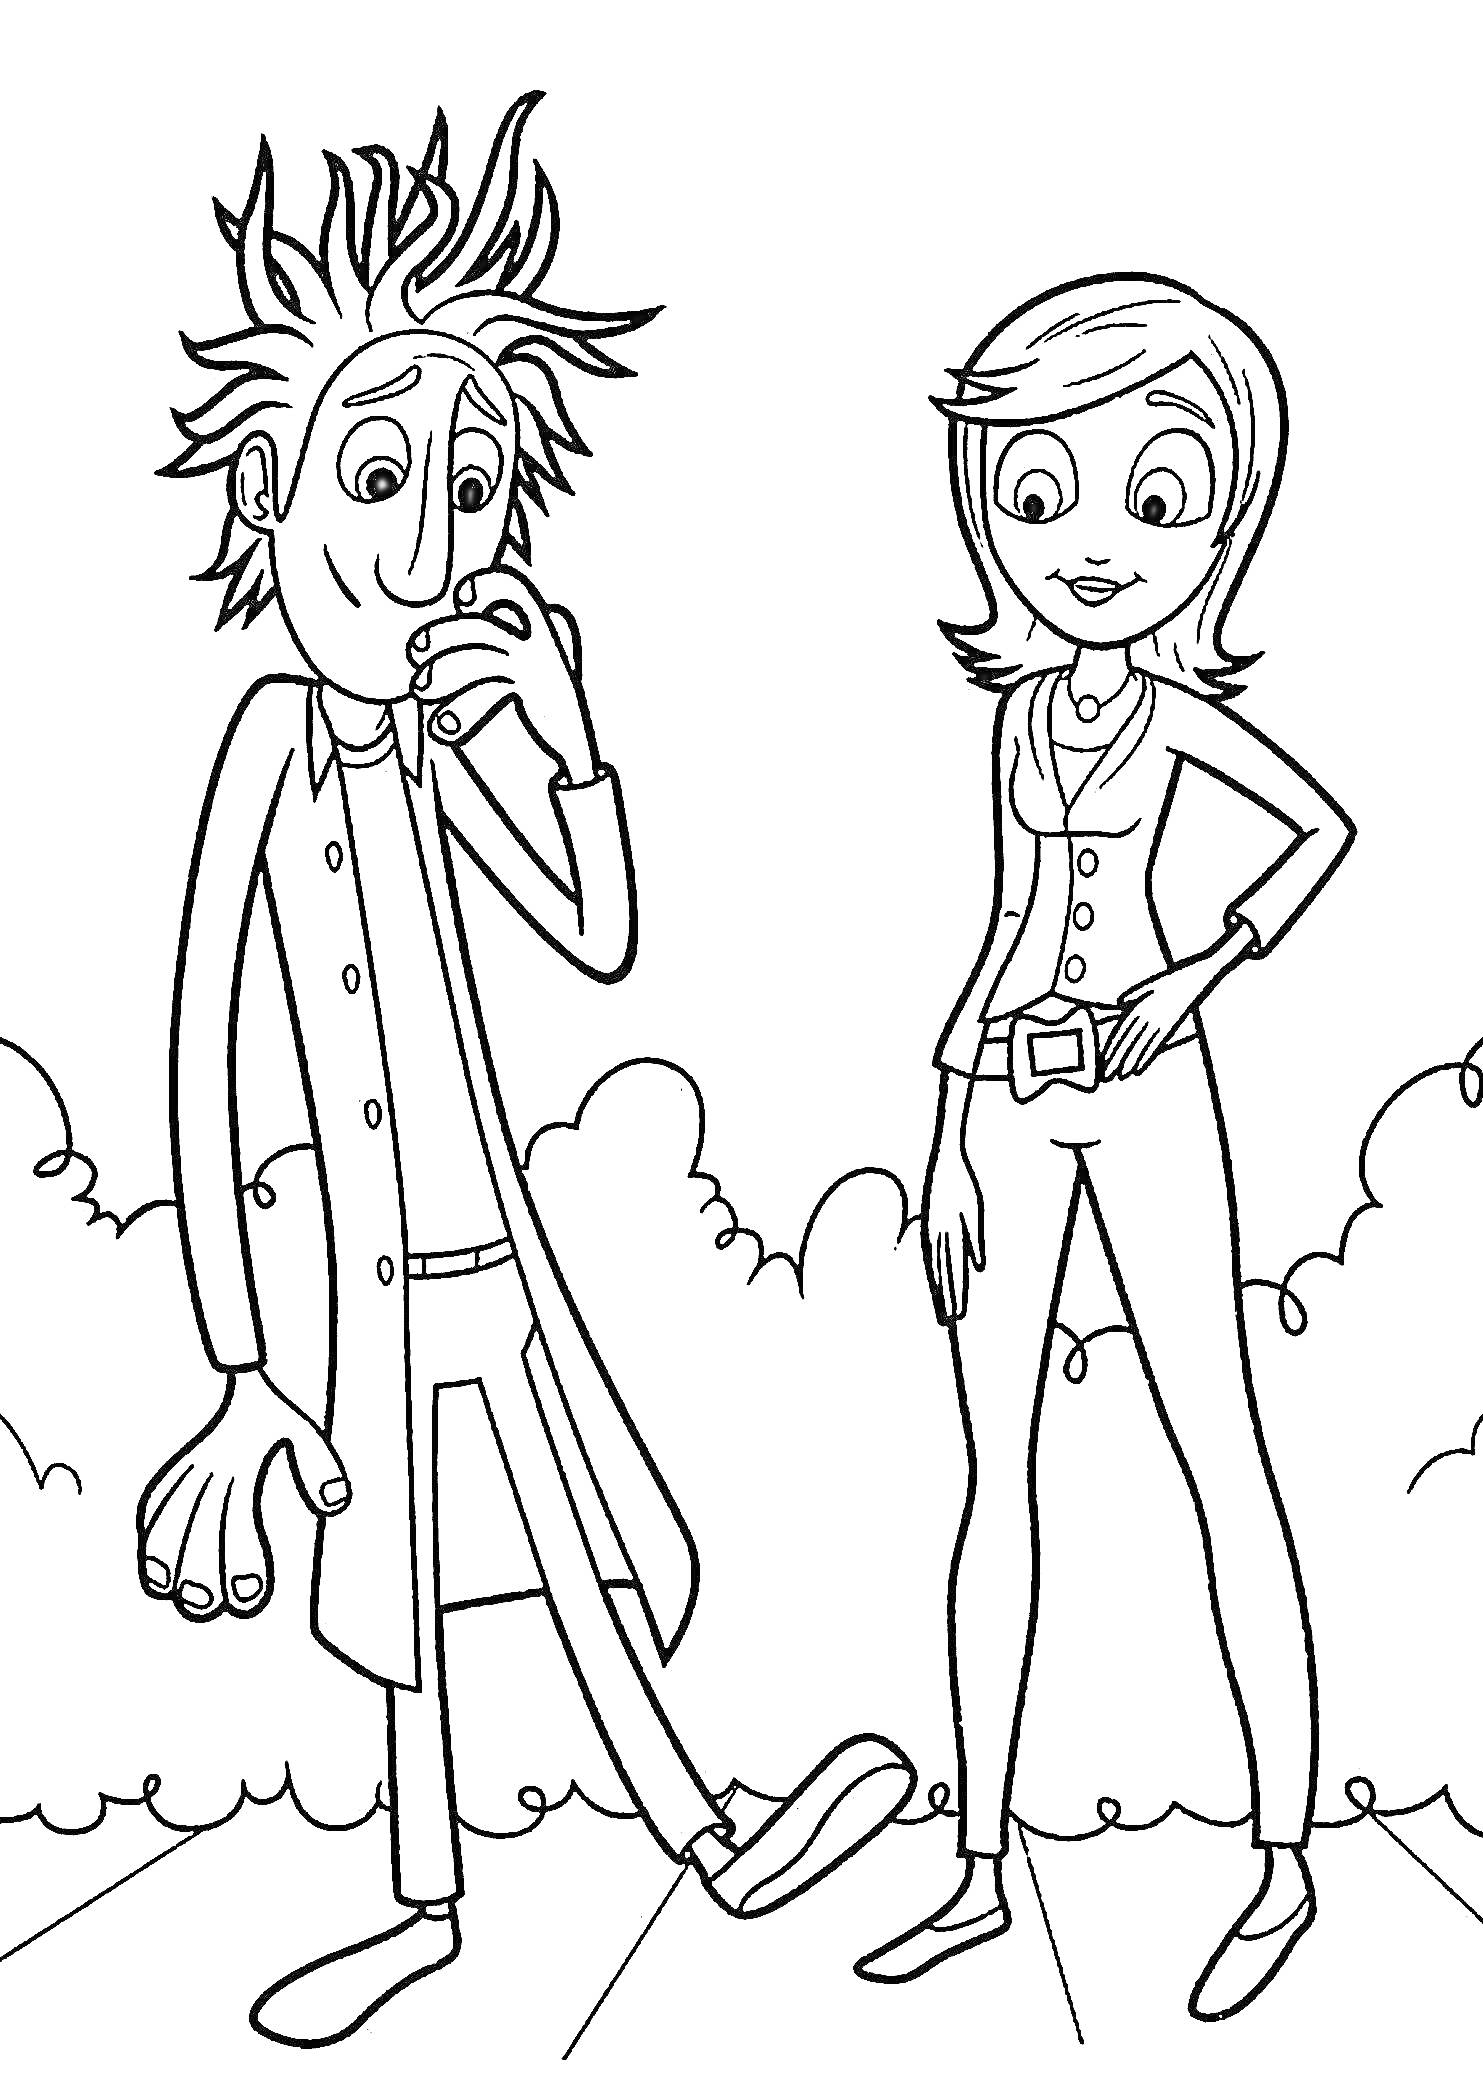 Два персонажа из мультфильма, мужчина с взъерошенными волосами и в халате и женщина с короткими волосами на фоне облаков